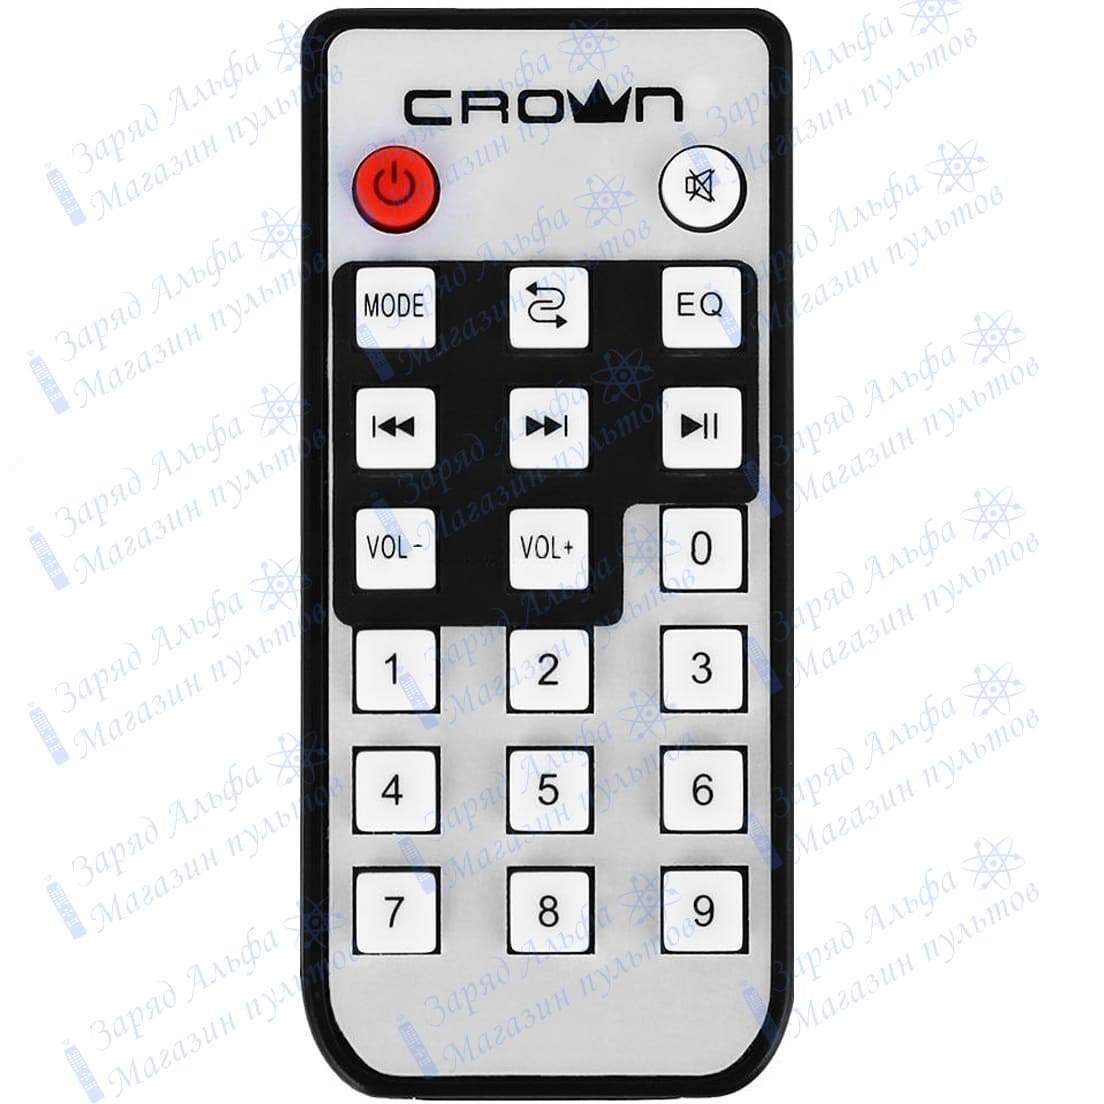 Приобрести пульт Crown CMS-3800, CMBS-361 вы можете в нашем магазине